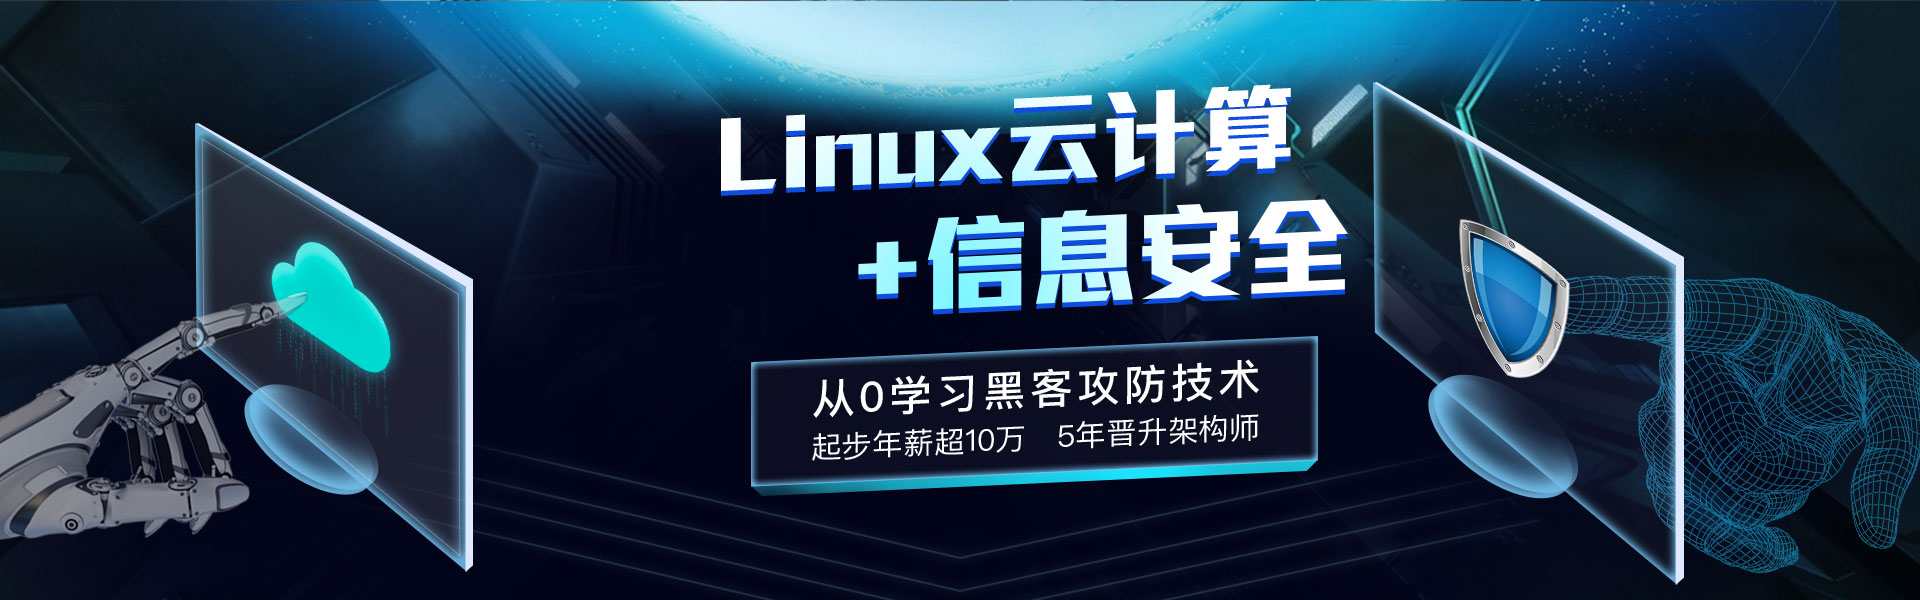 linux云计算+信息安全培训课程